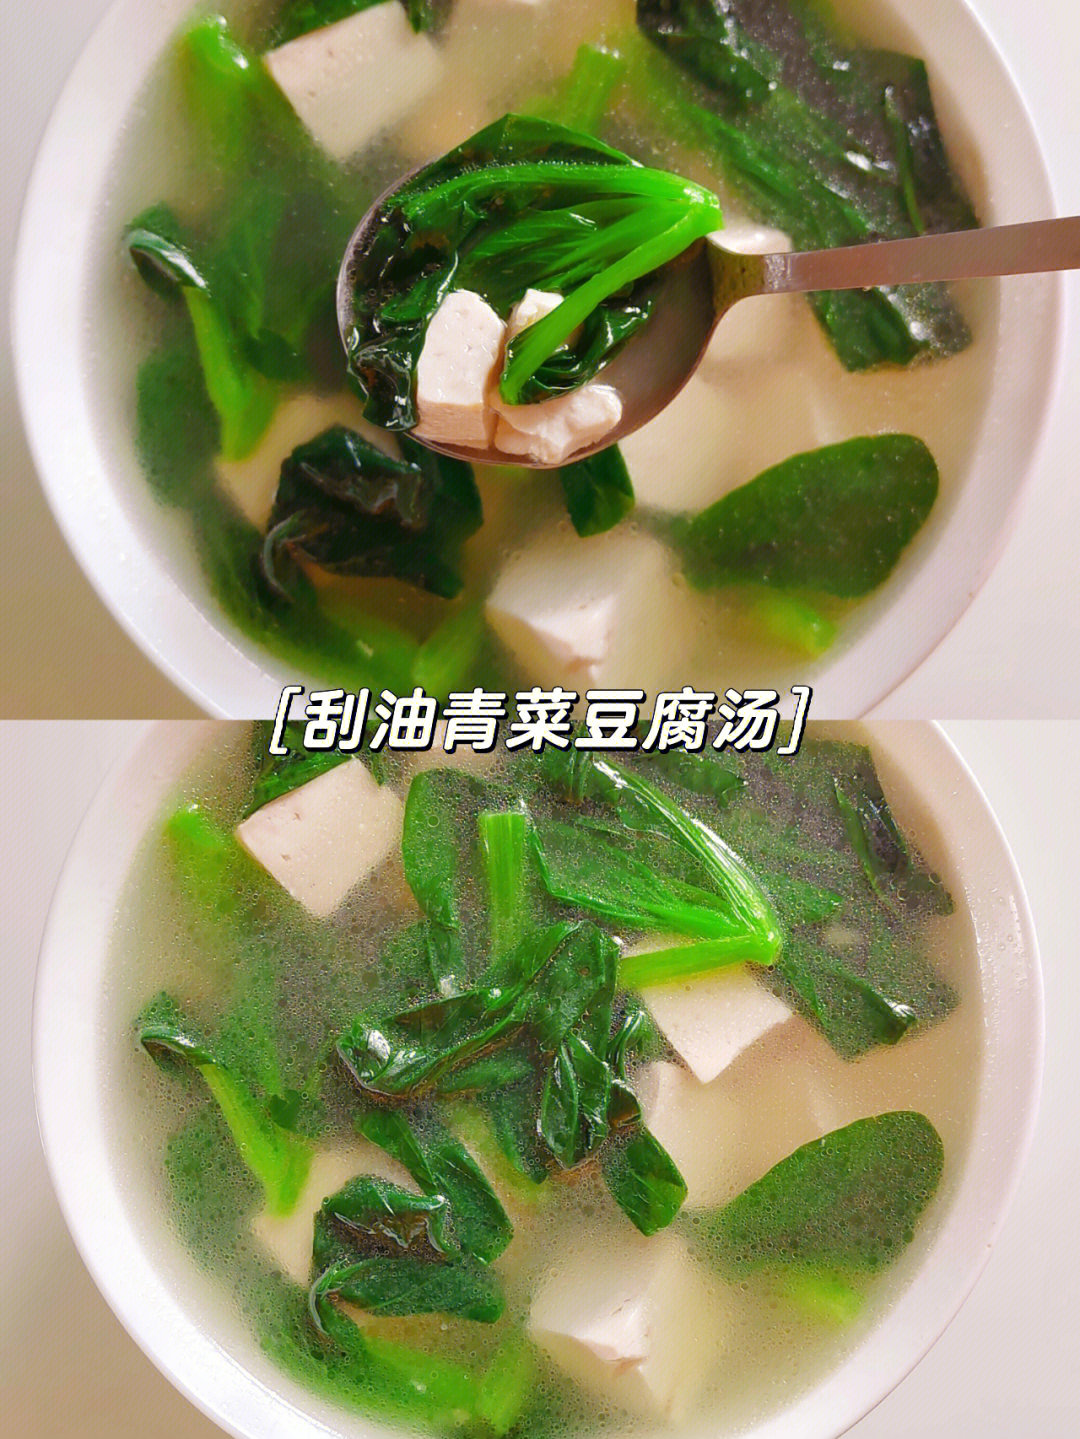 78[彩虹r]hello7515今天给大家分享青菜豆腐汤,据说,此汤清热